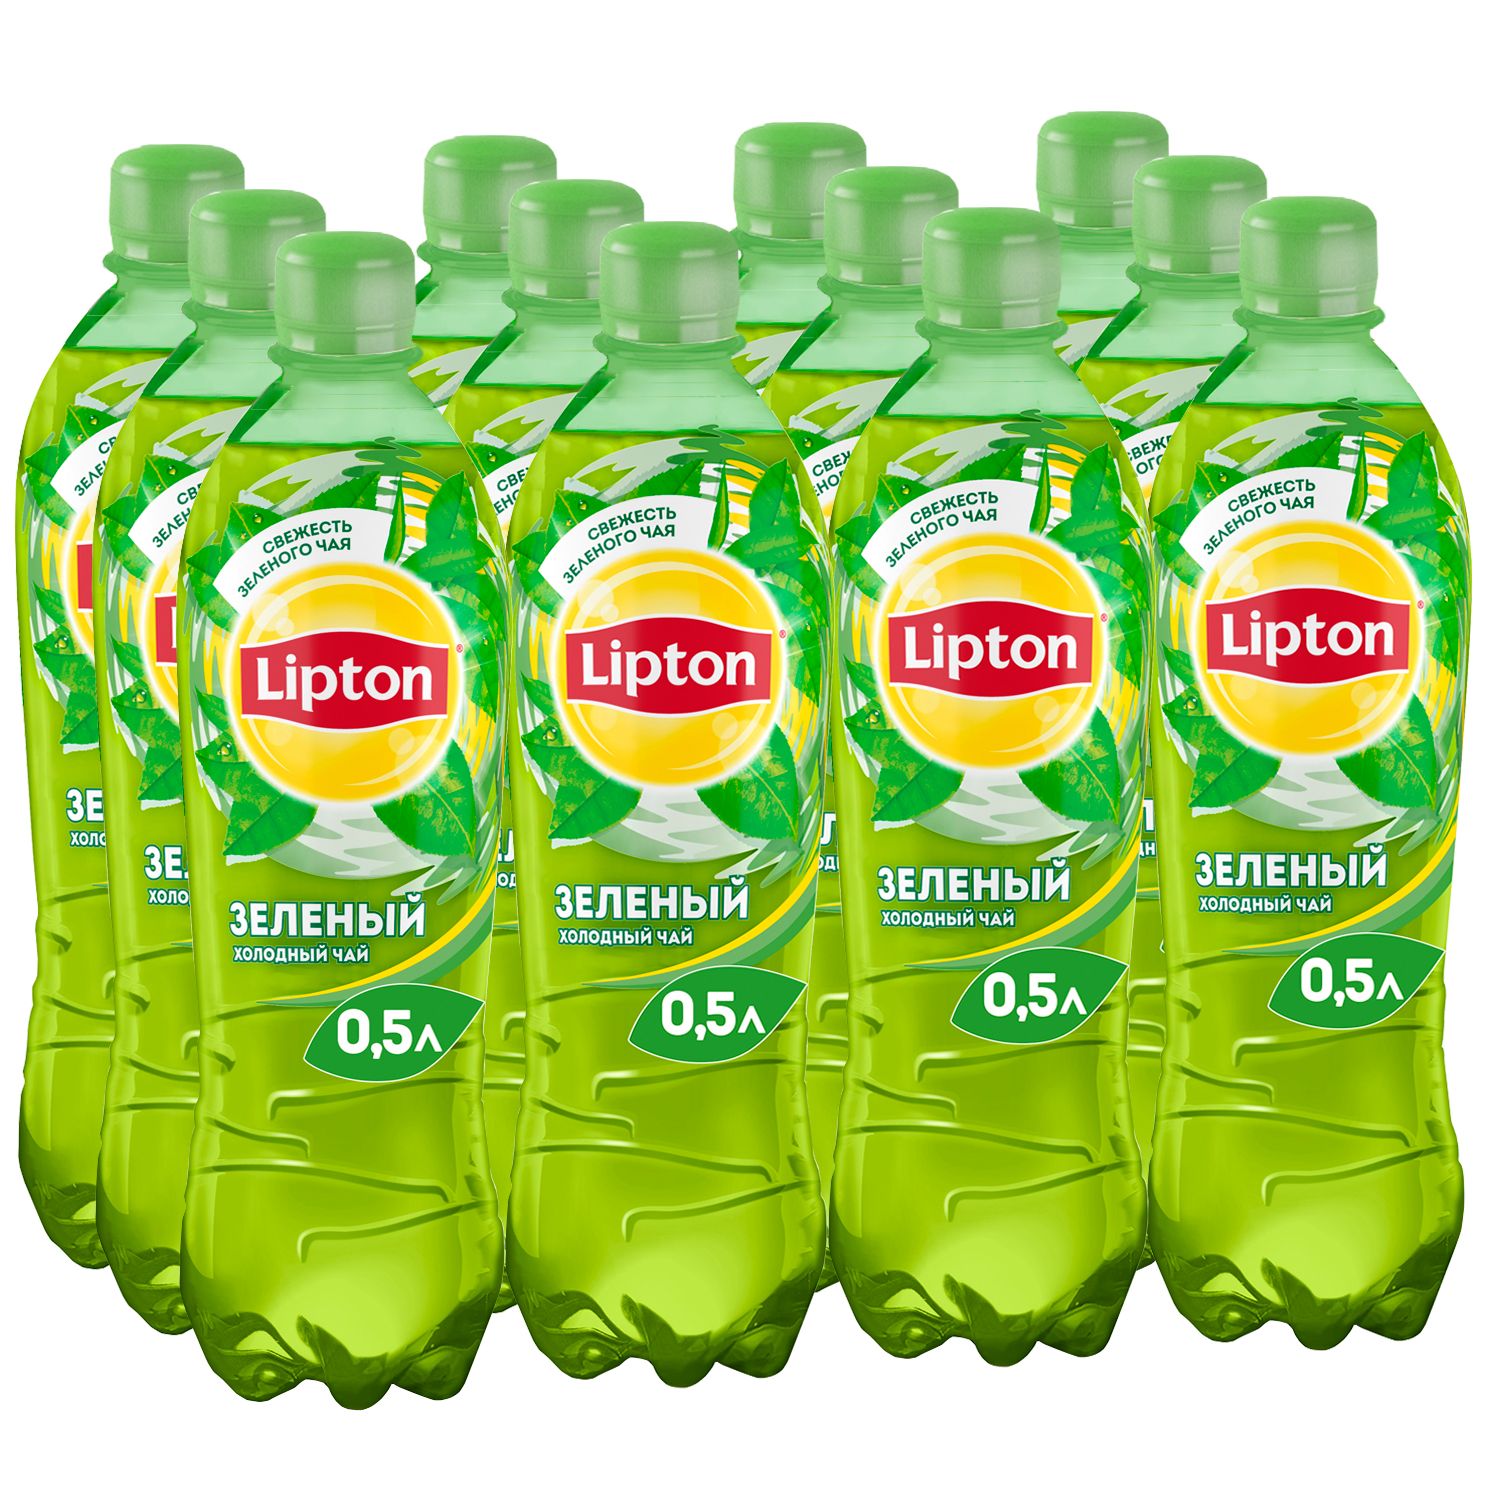 Липтон зеленый холодный. Липтон 0,5 зеленый. Липтон зеленый чай 0.5. Липтон зелёный холодный чай. Зеленый Липтон зеленый Липтон.